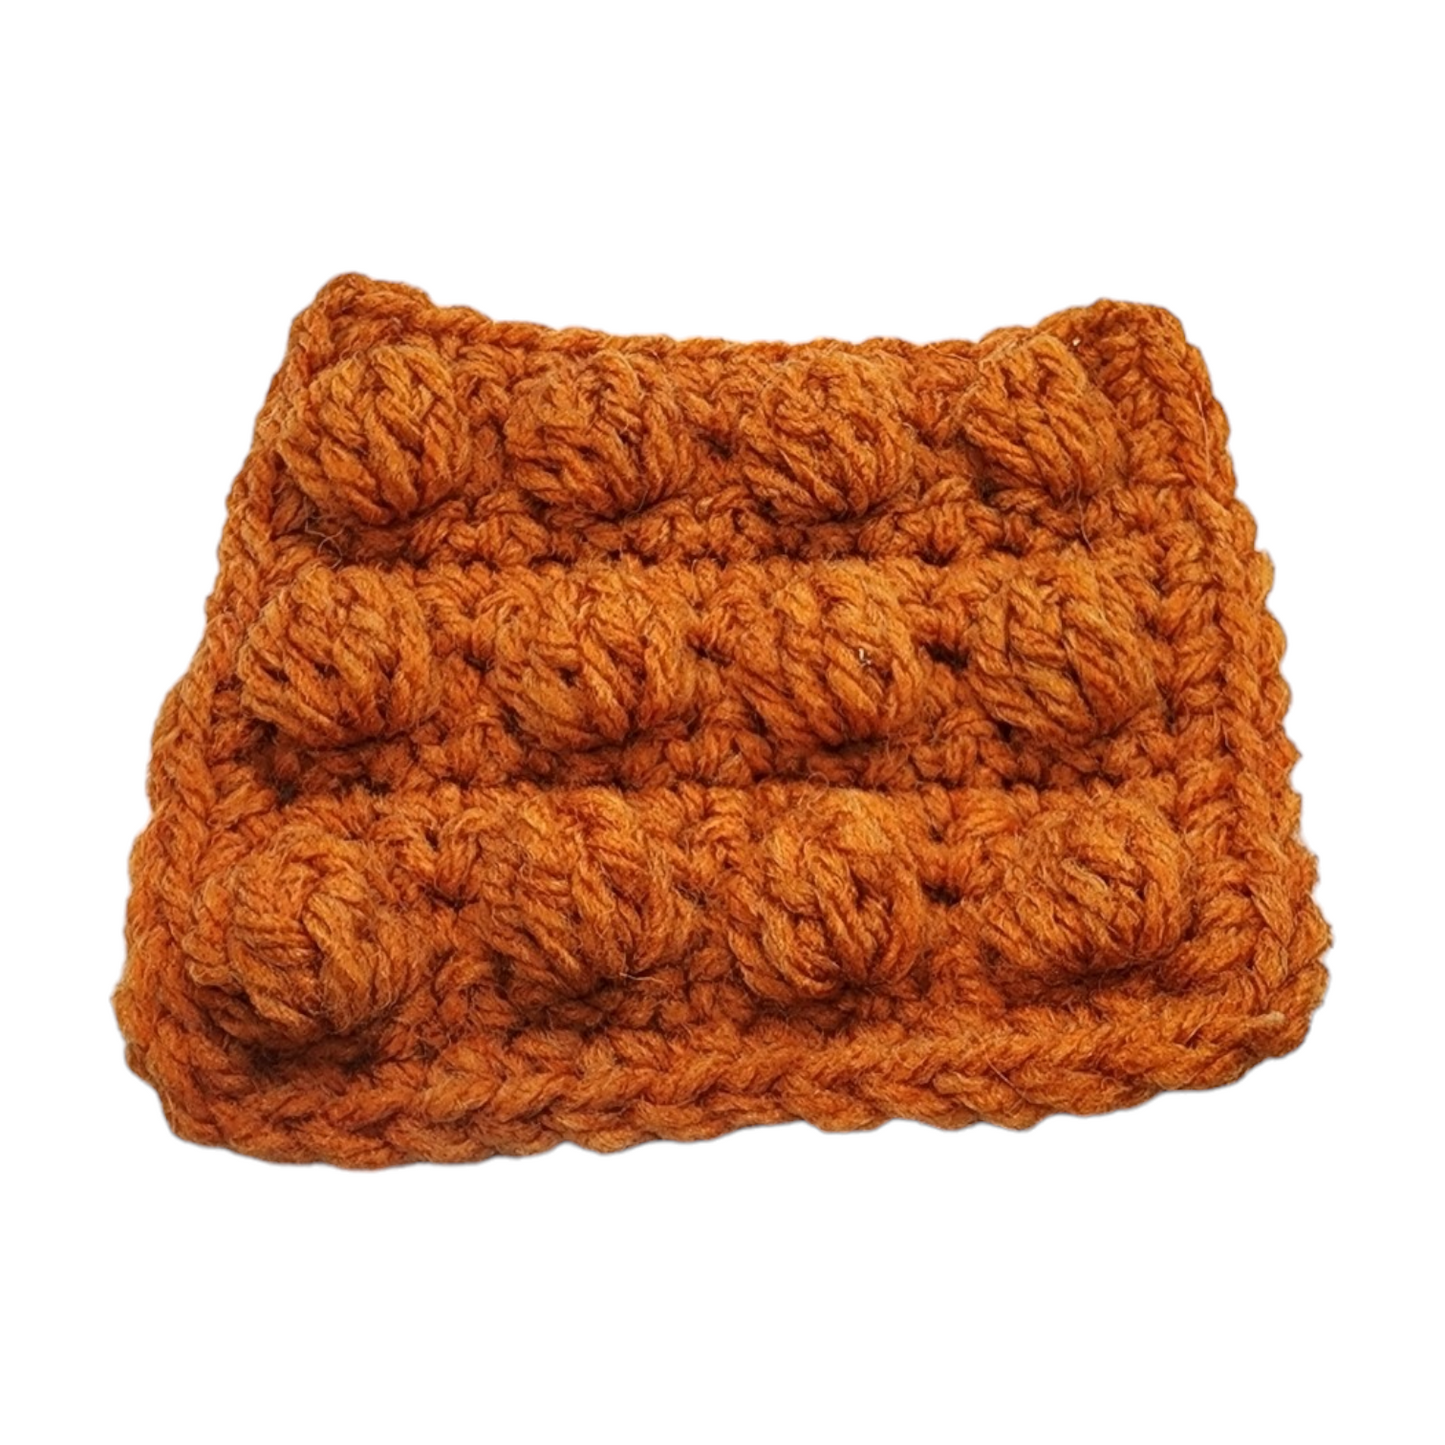 Crochet Pop Fidget Toy